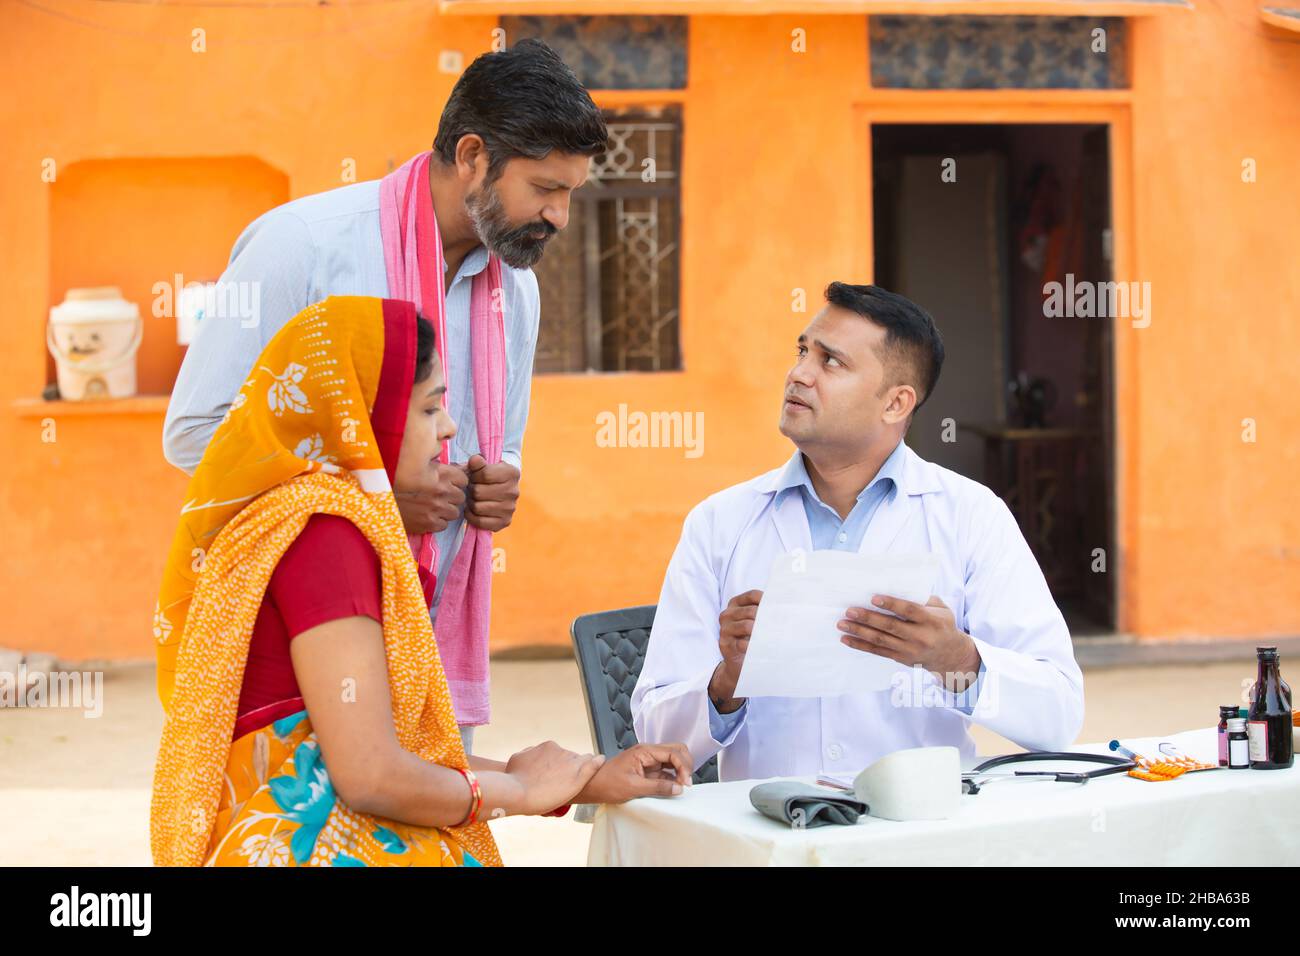 Medico indiano che spiega il test medico o prescrivere la medicina al paziente in villaggio, donna che indossa sari con suo marito che ottiene l'esame da medica Foto Stock